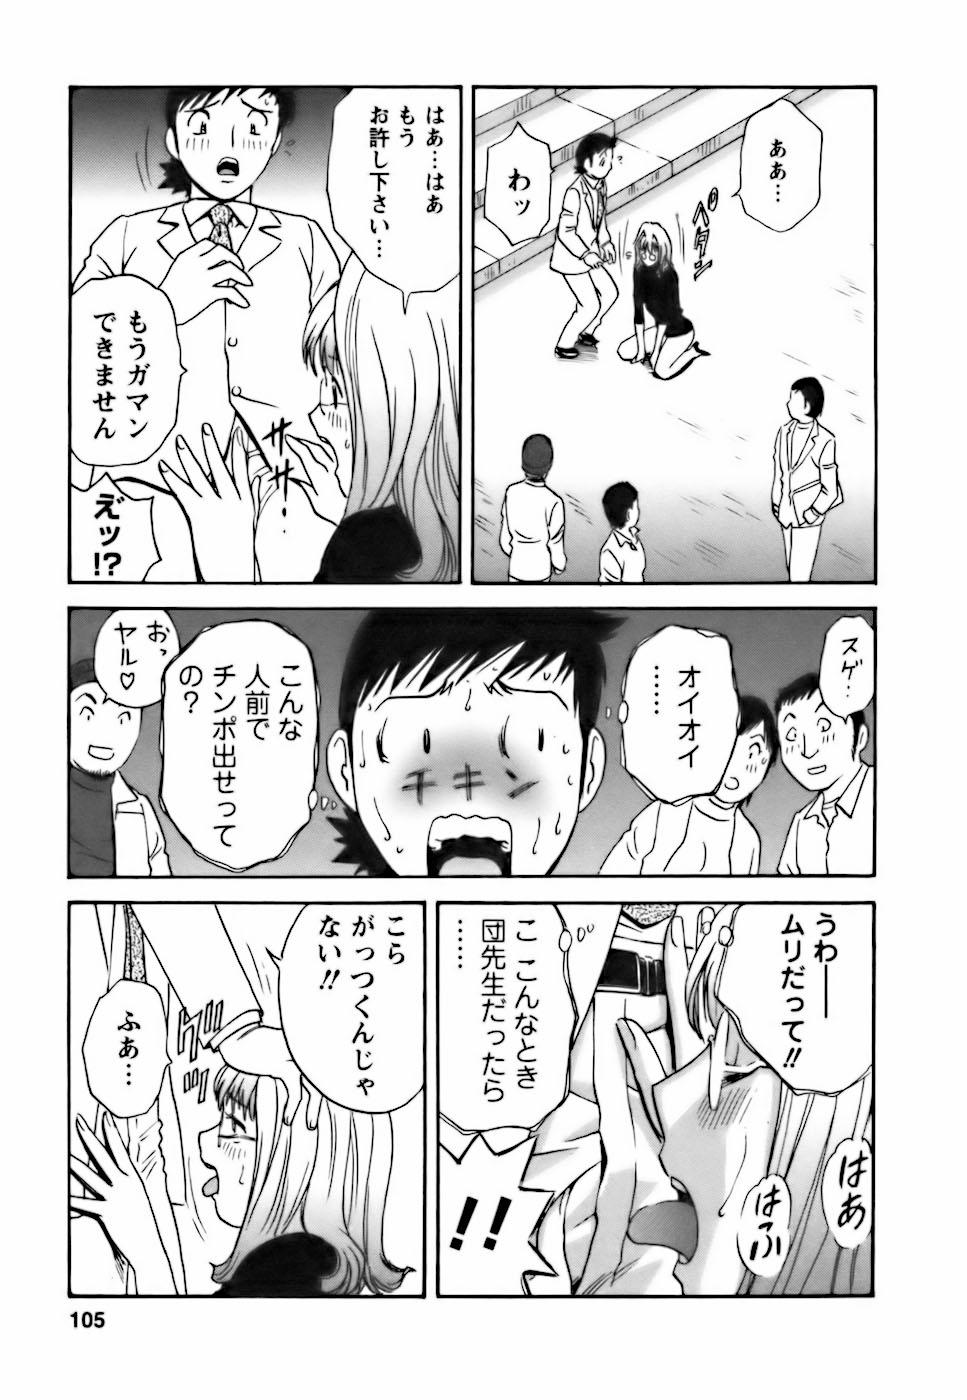 [Hidemaru] Mo-Retsu! Boin Sensei (Boing Boing Teacher) Vol.3 100